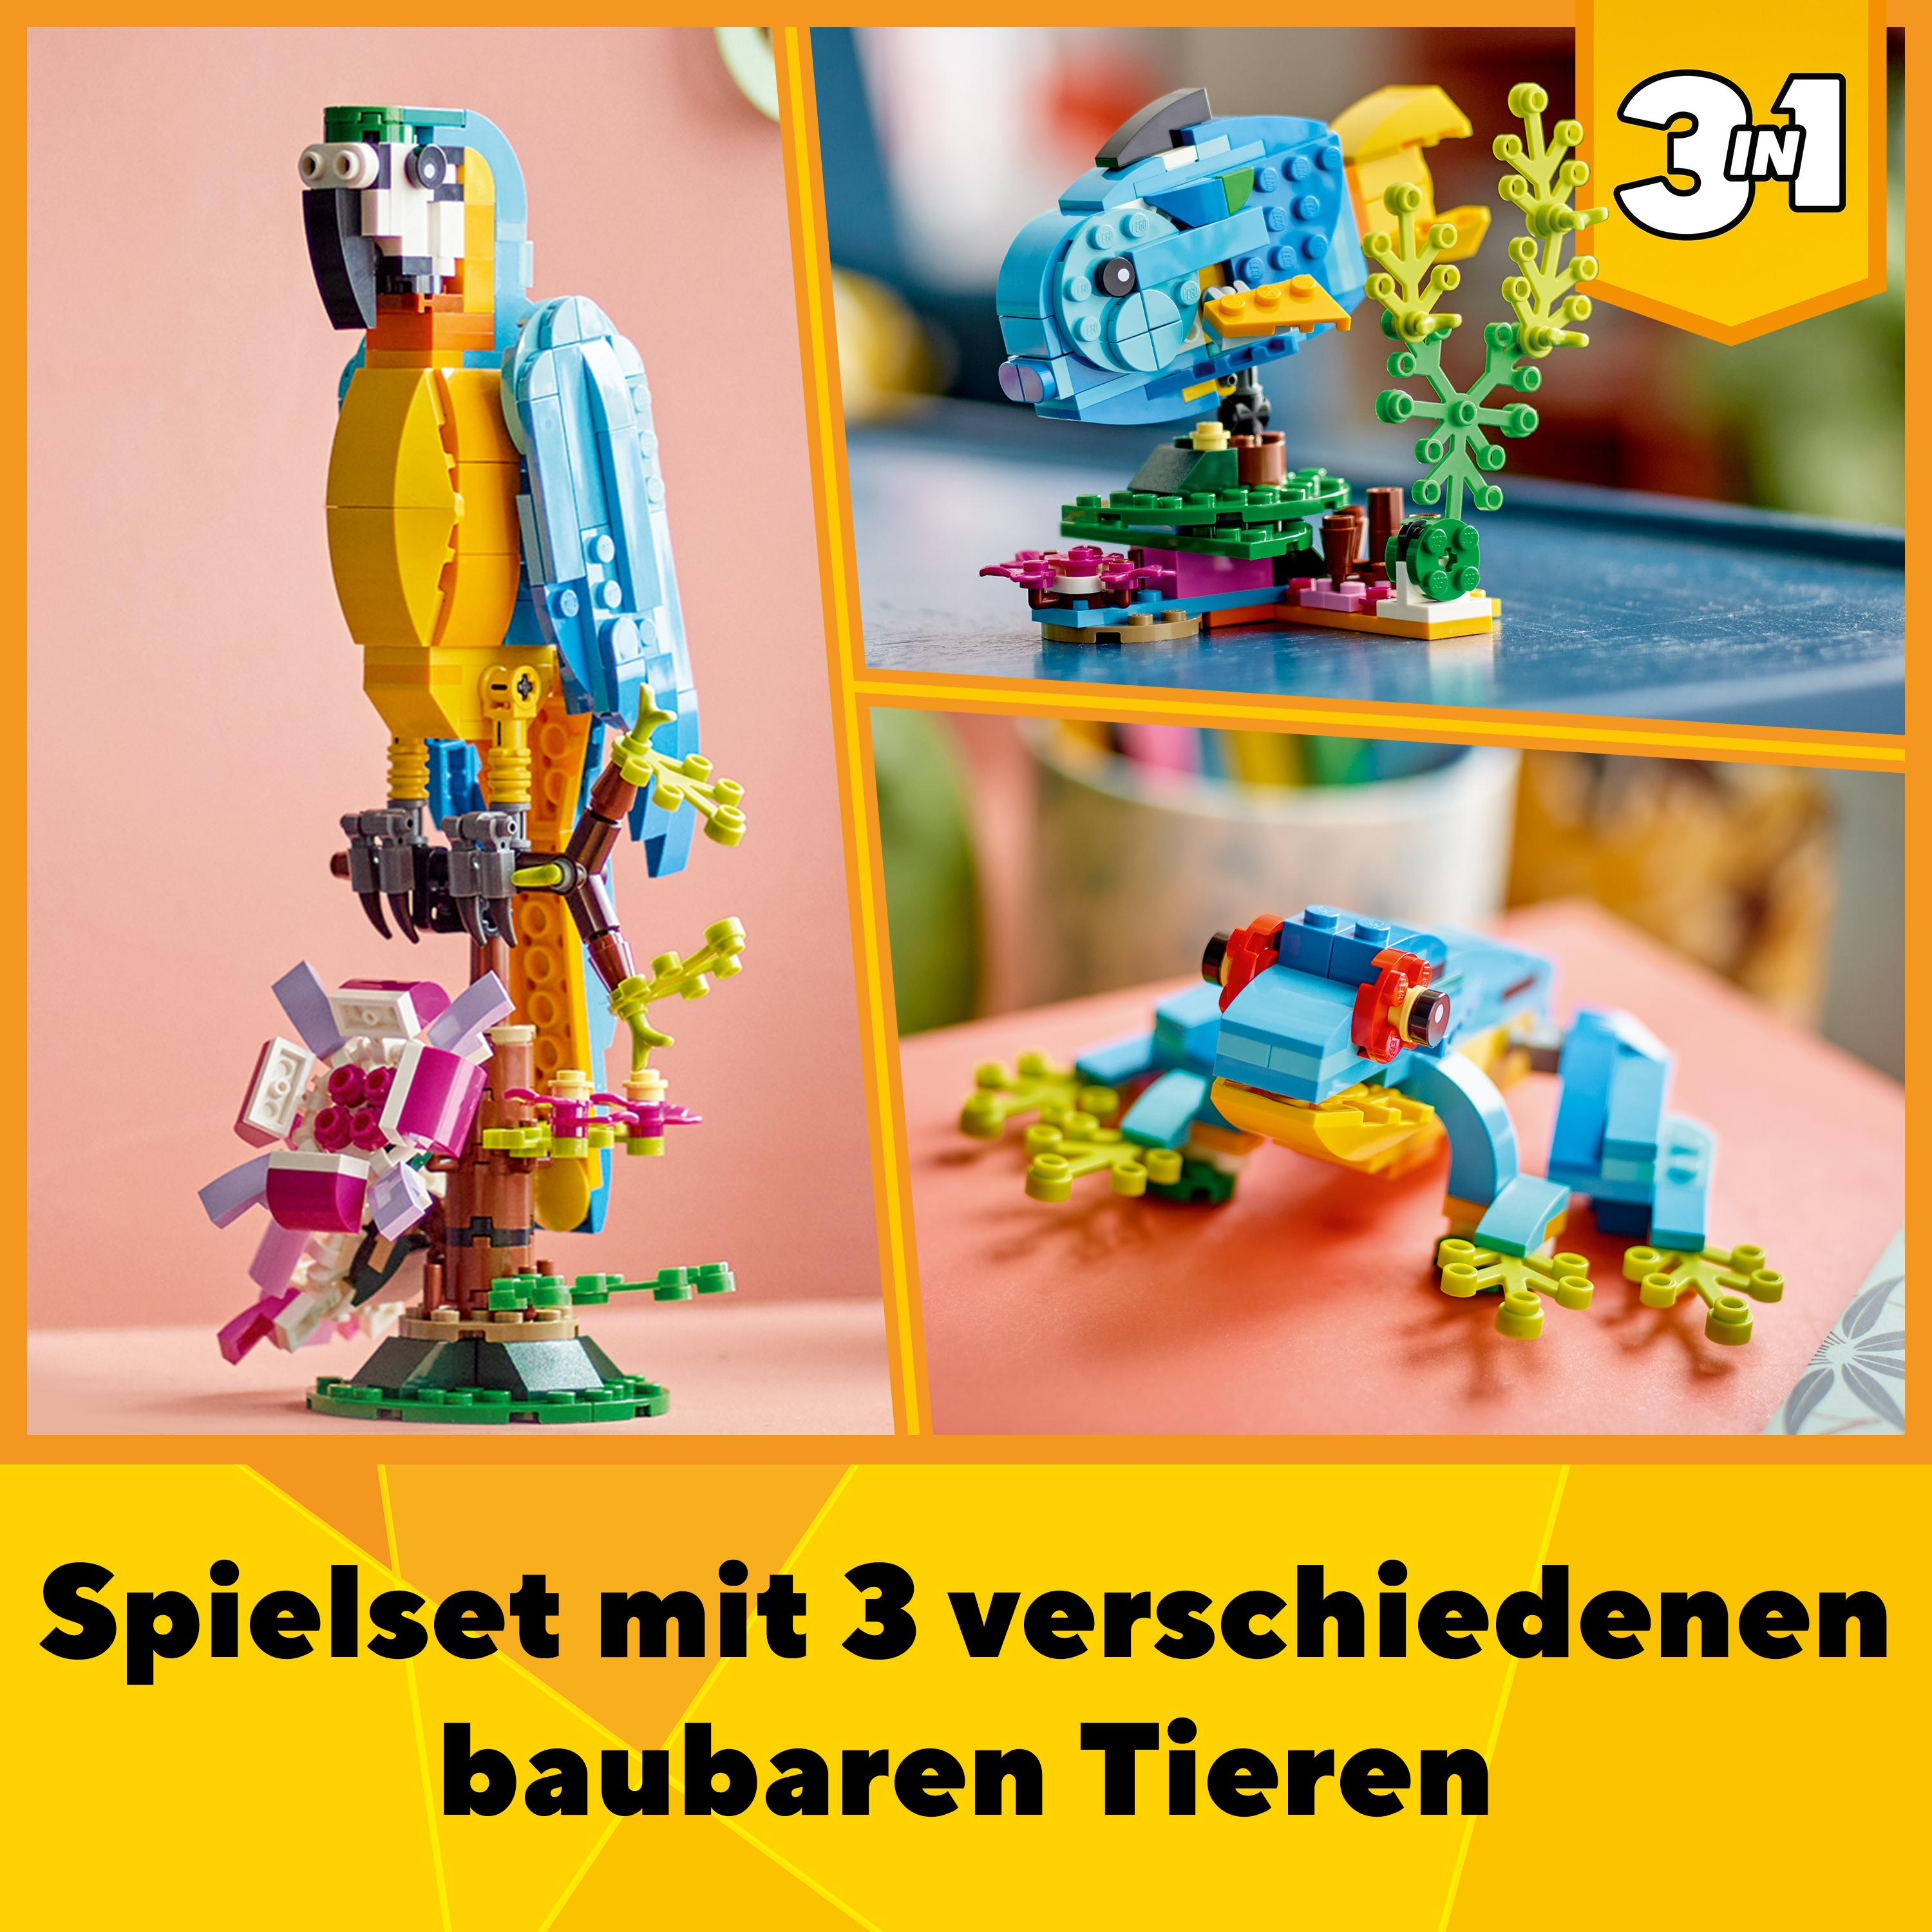 Mehrfarbig Papagei Creator Exotischer LEGO 31136 Bausatz,